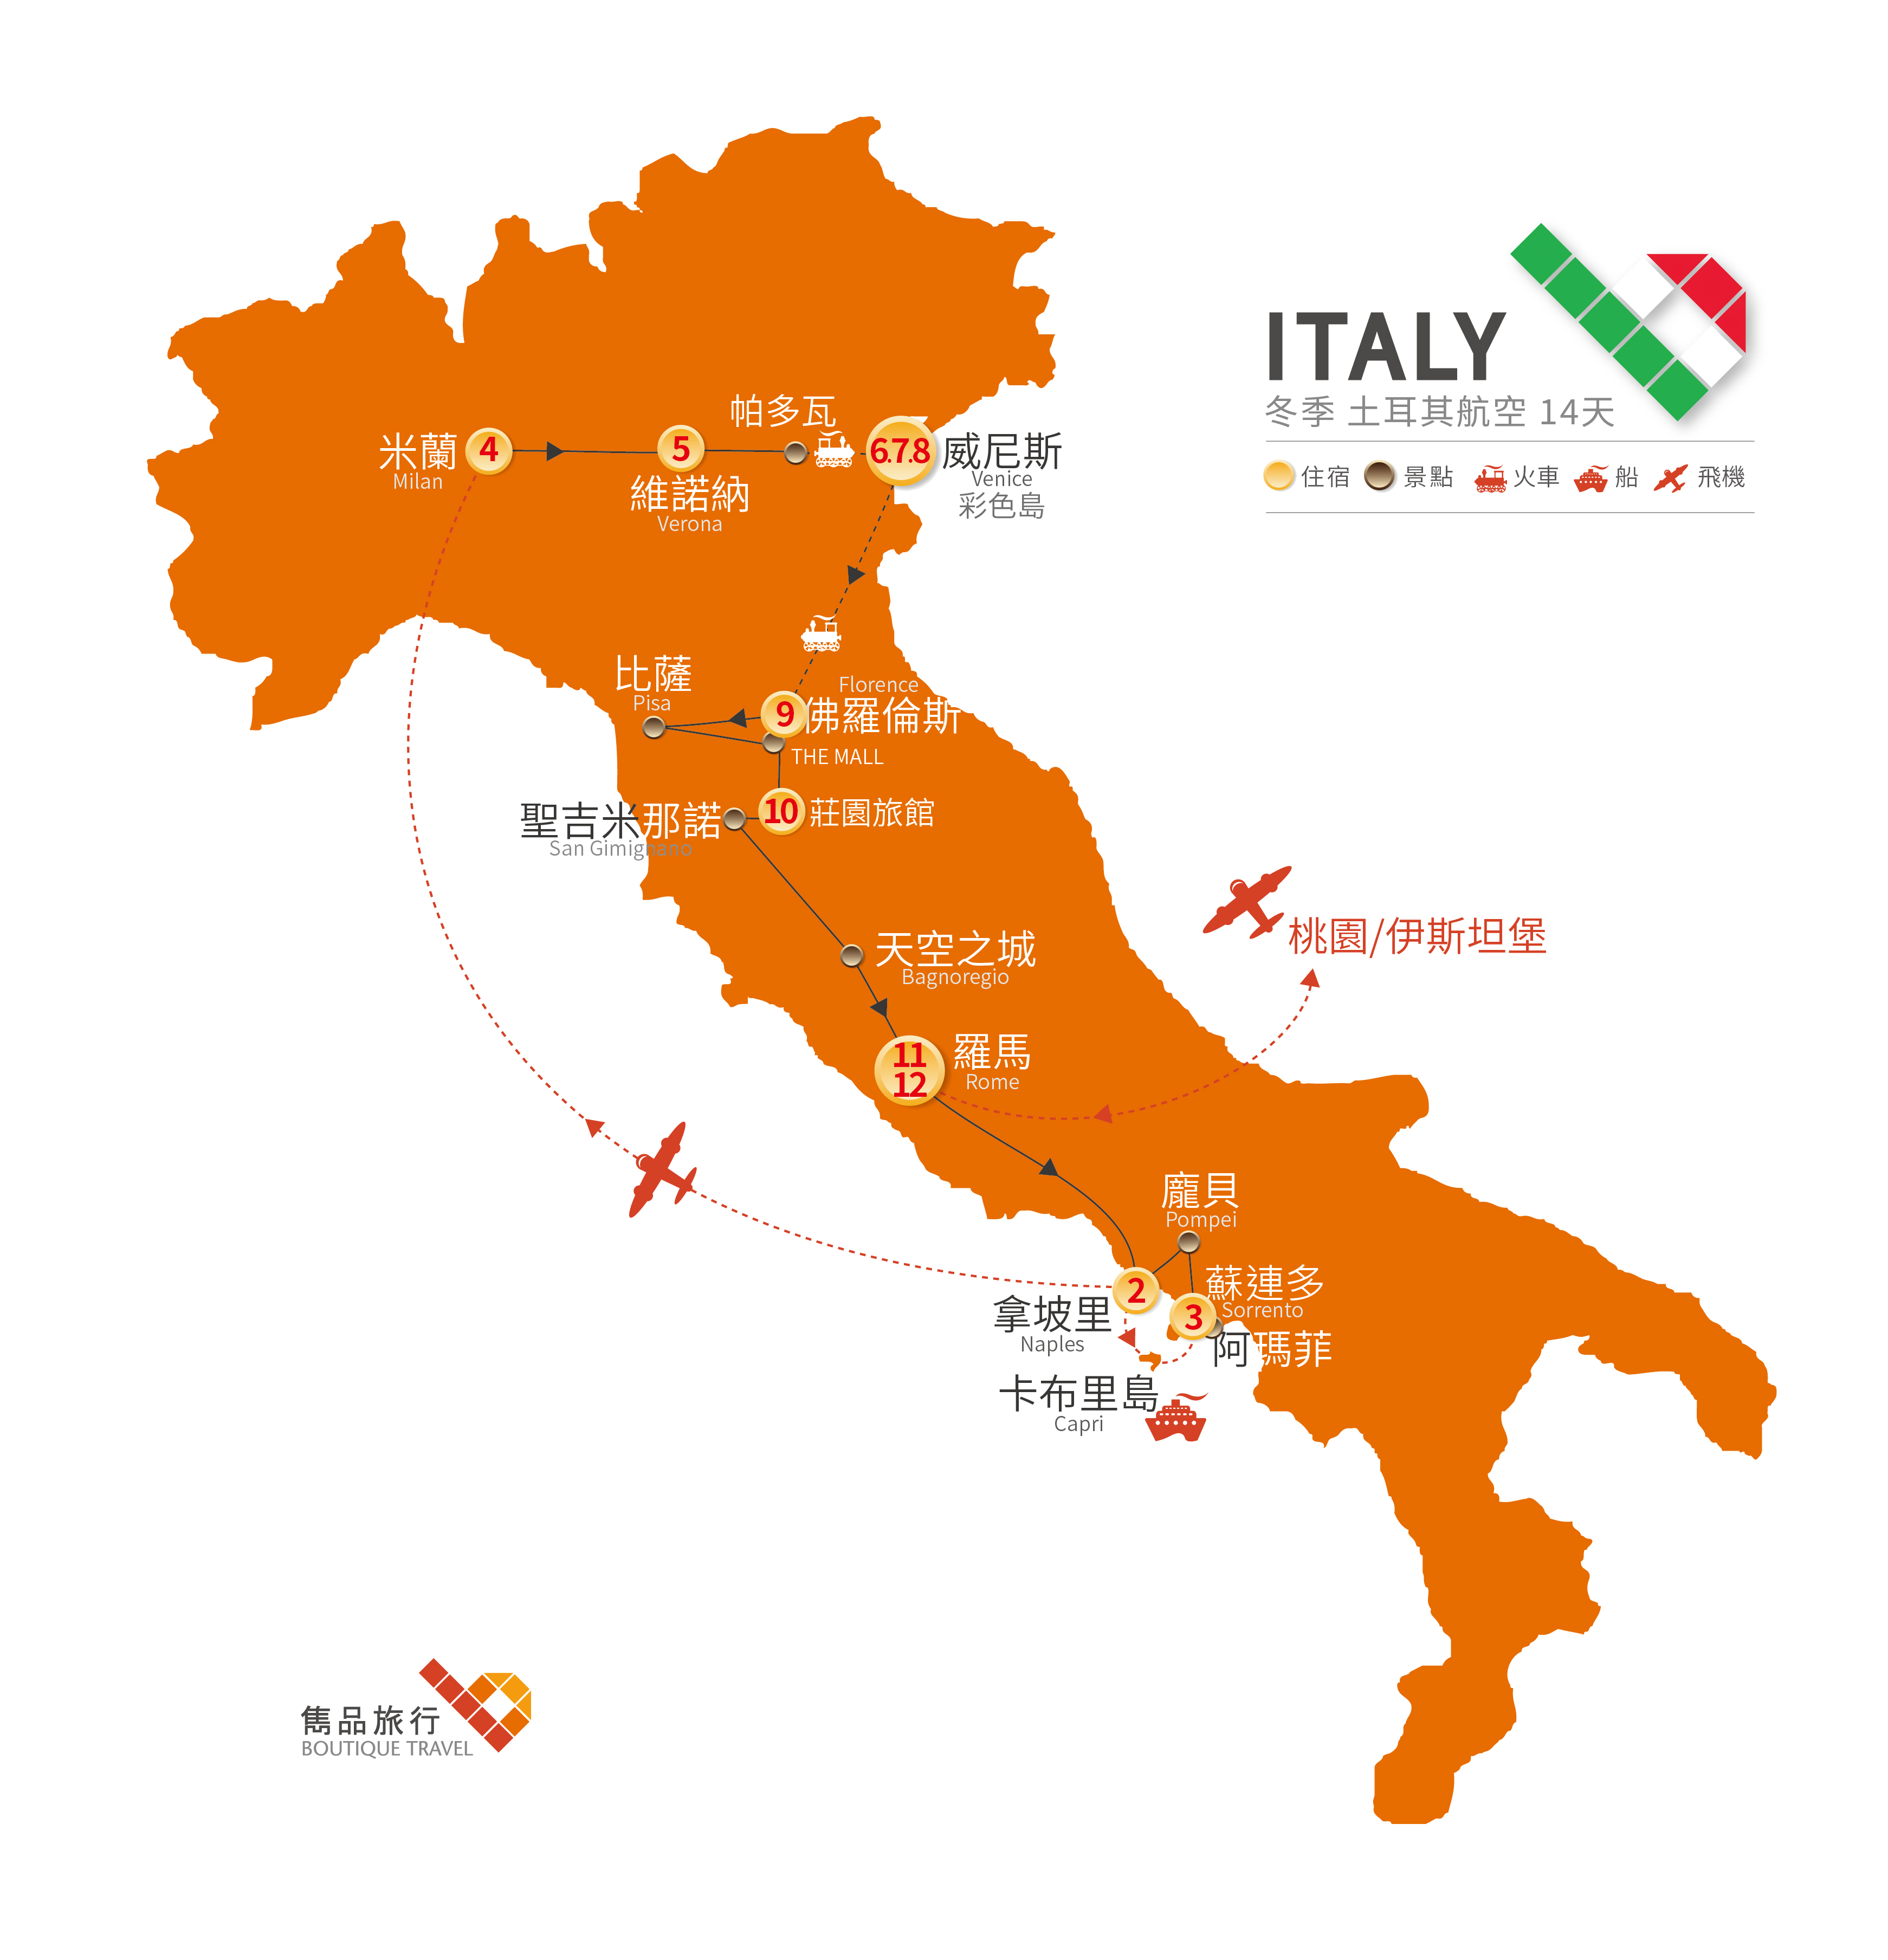 義大利 旅行地圖-相約冬季 擁抱義大利14天